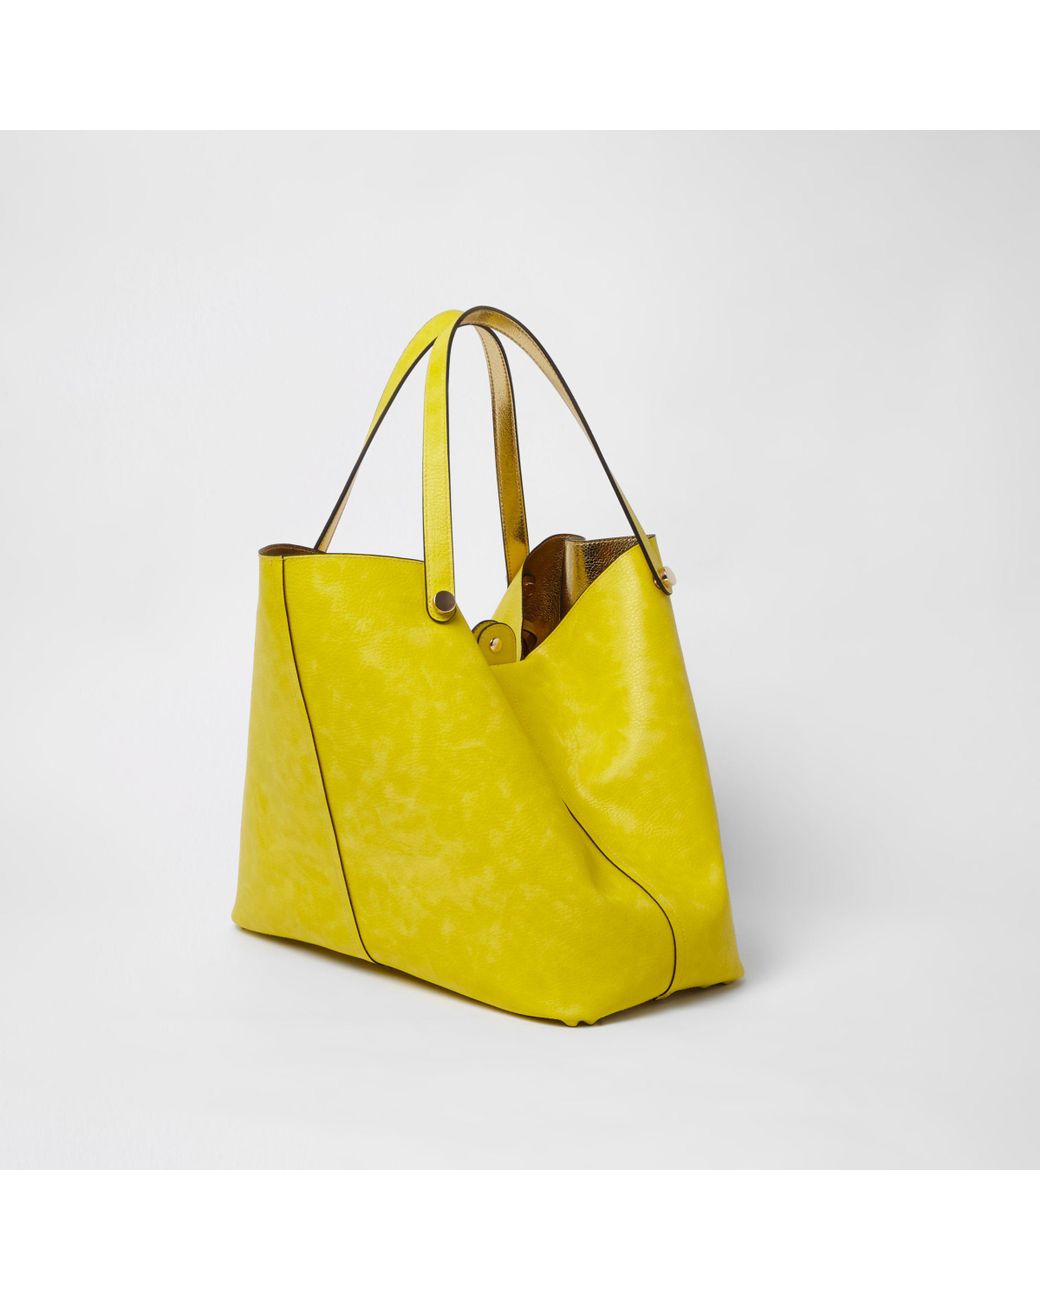 RIVER ISLAND Yellow Mini Tote Cross Body Bag BNWT Christmas Gift:  : Fashion